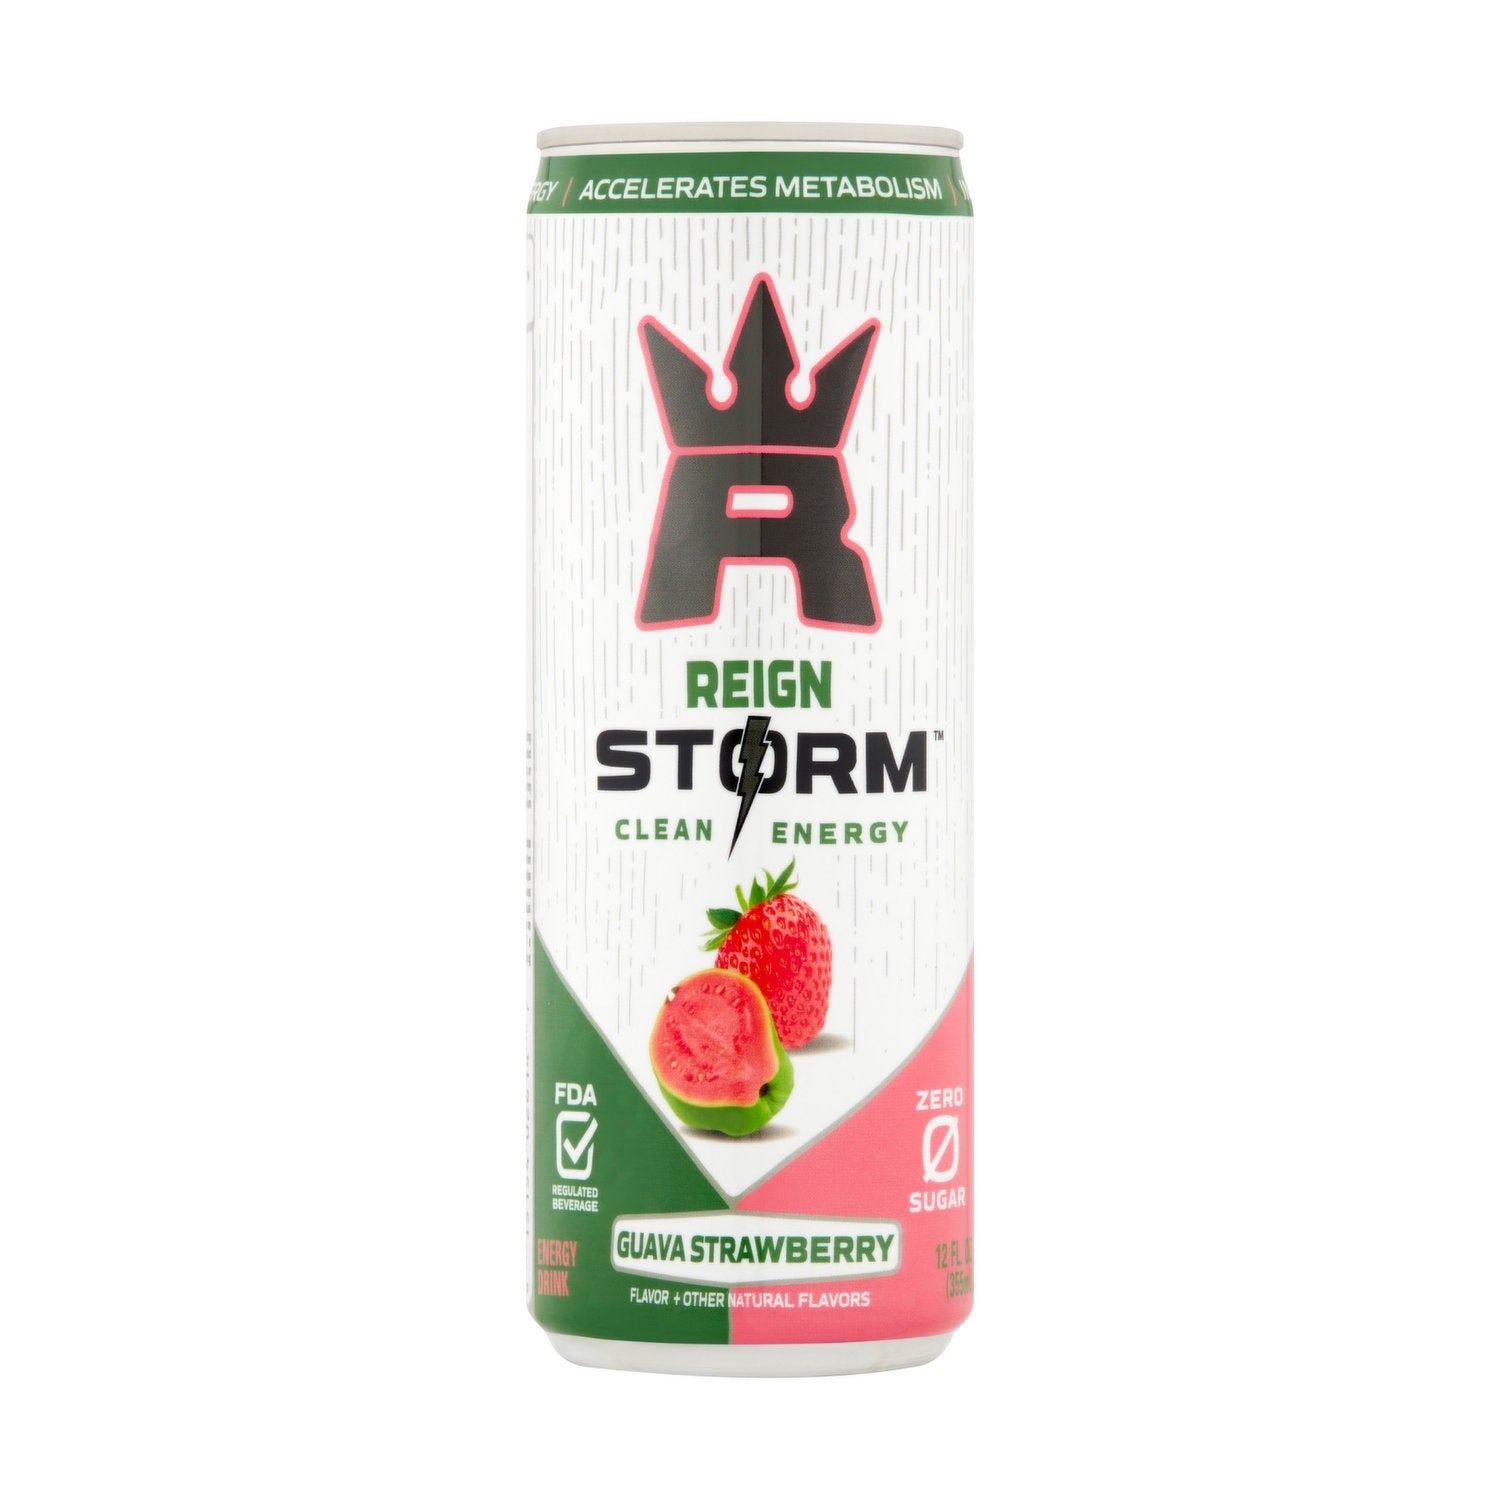 Reign Storm Energy Guava Strawberry 12oz